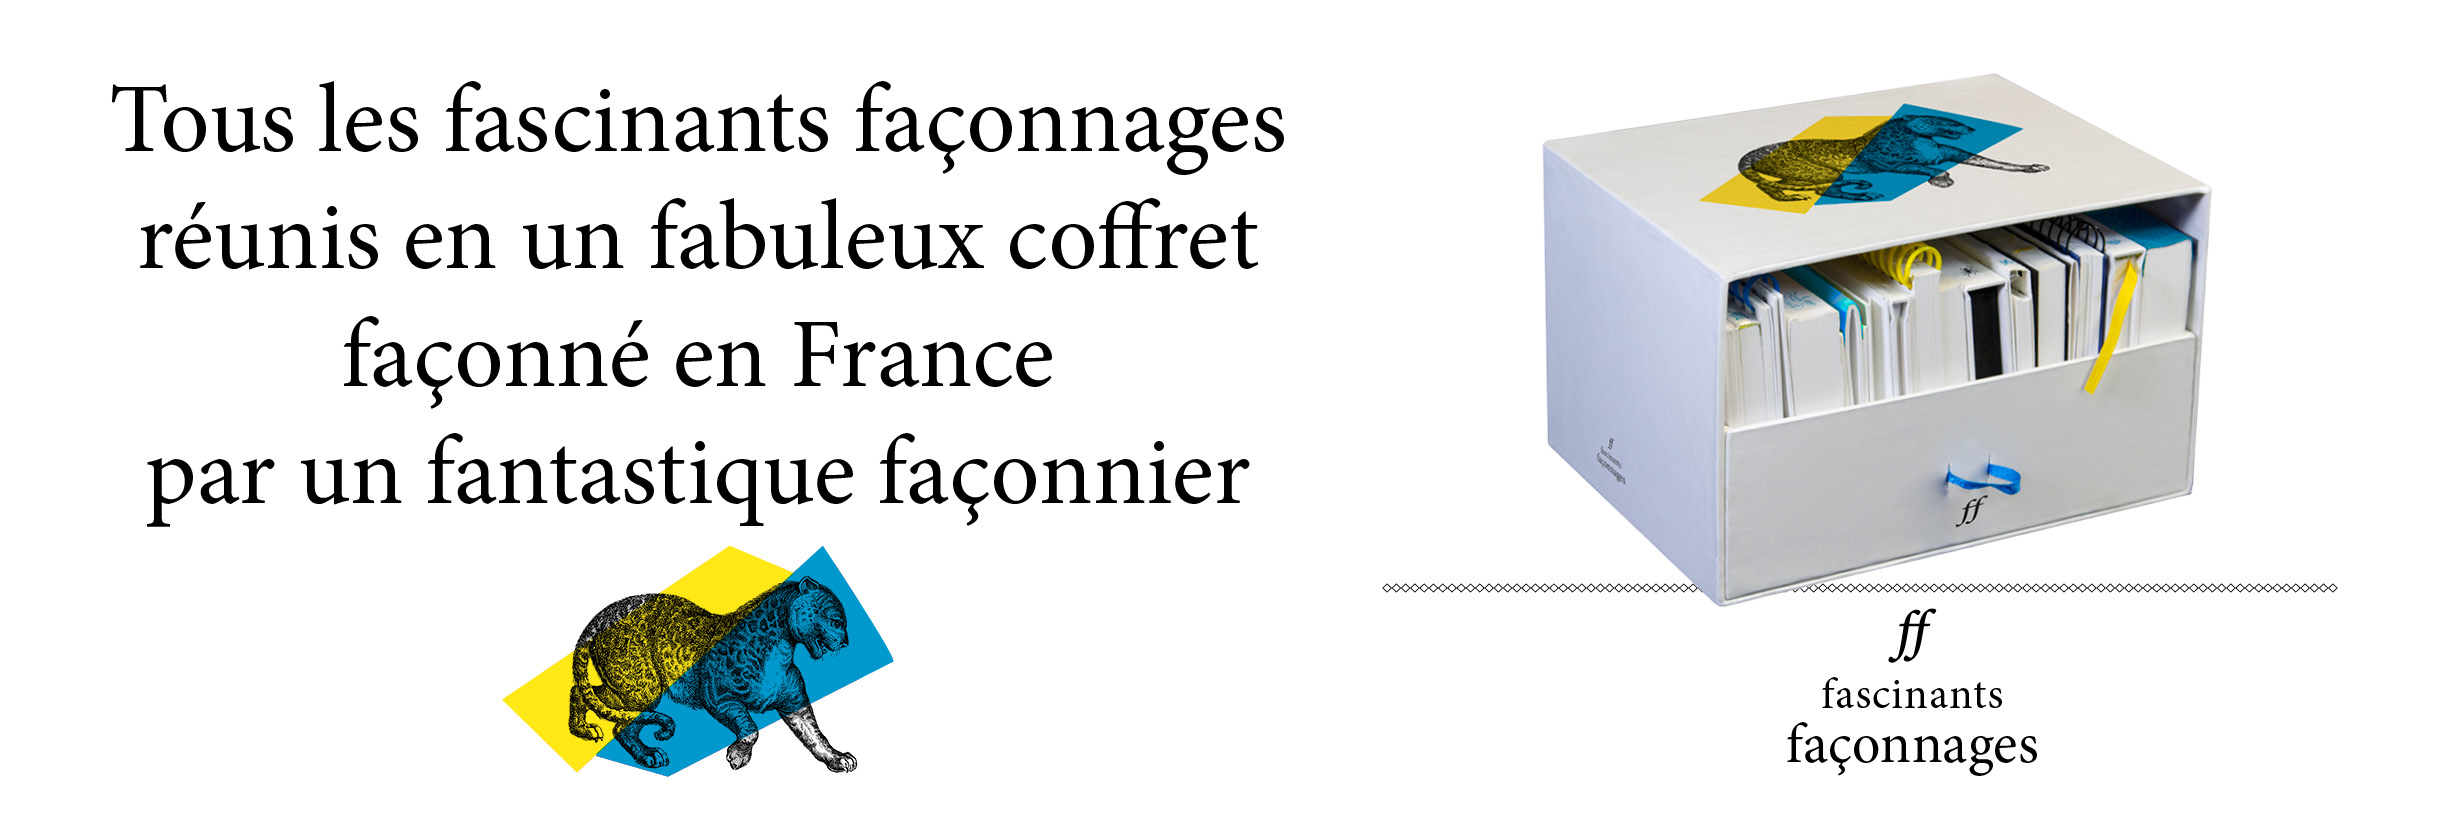 nouvelle box Clément